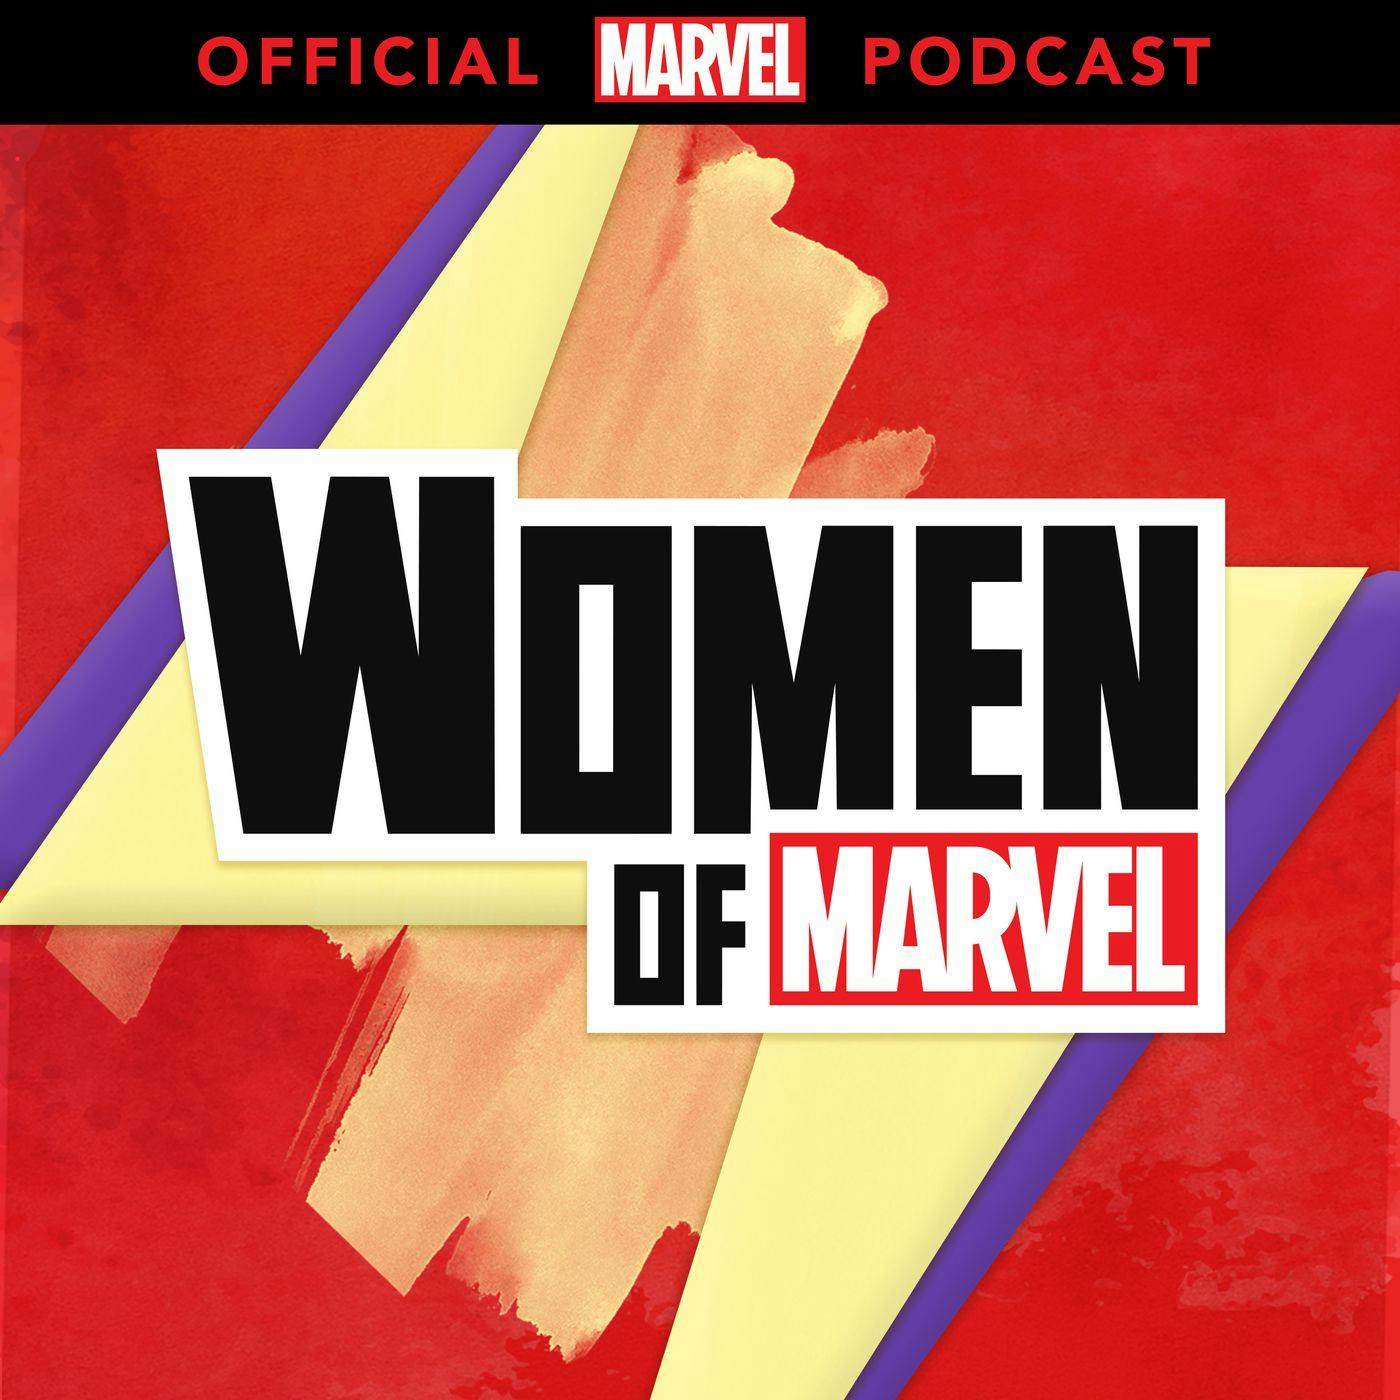 Marvel’s 'Cloak and Dagger’ Season 2 with Olivia Holt and Emma Lahana